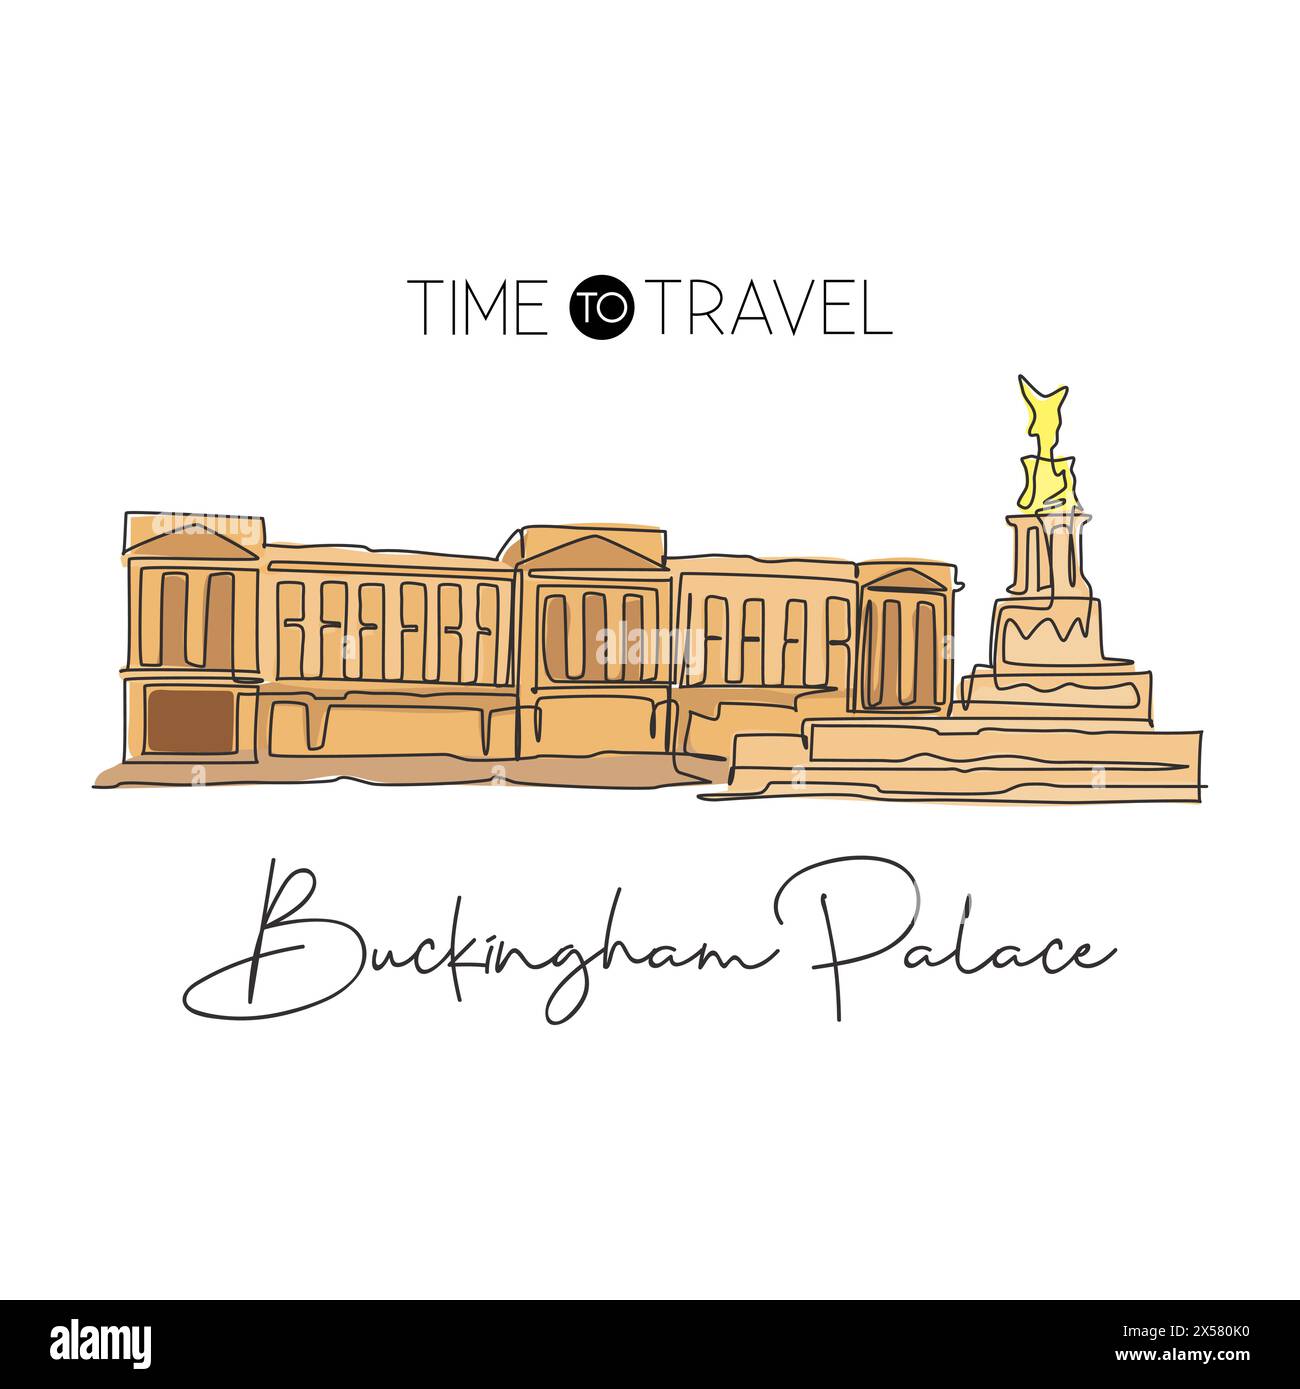 Eine einzelne Linie mit dem Wahrzeichen des Buckingham Palace. Weltberühmtes Wahrzeichen in London, England. Tourismus Reise Postkarte Wanddekor Druckkunst Konzept. Modus Stock Vektor